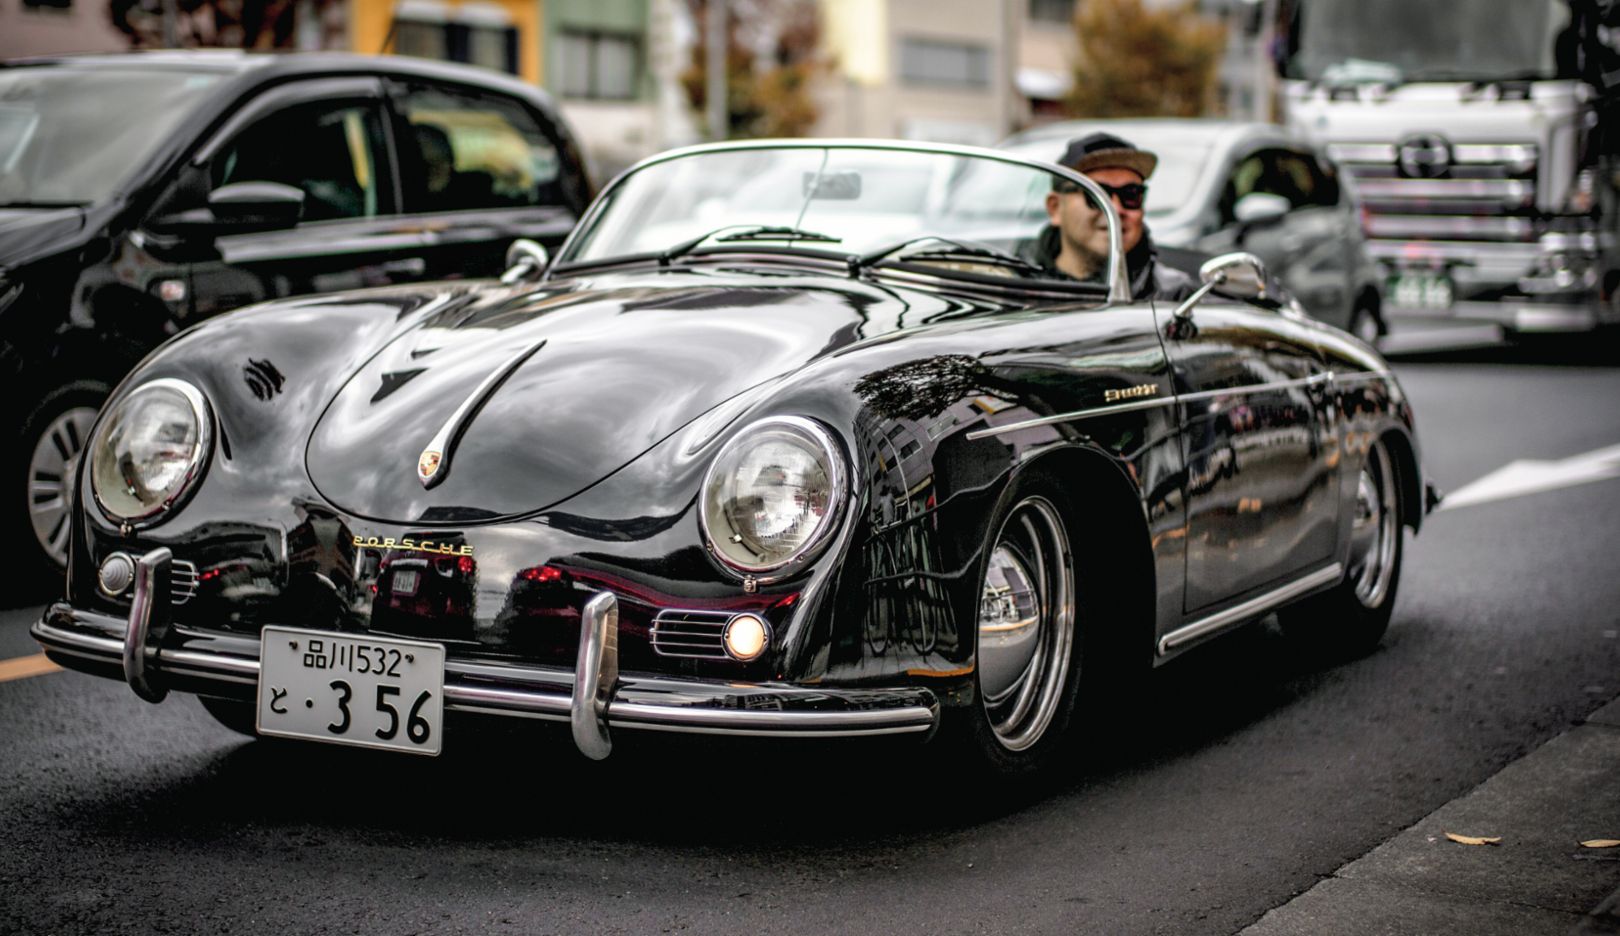 Der Moment: Im Vorbeigehen in Tokio entdeckt und abgelichtet. Ein Porsche – wie dieser 356 Speedster – ist immer ein gutes Motiv.